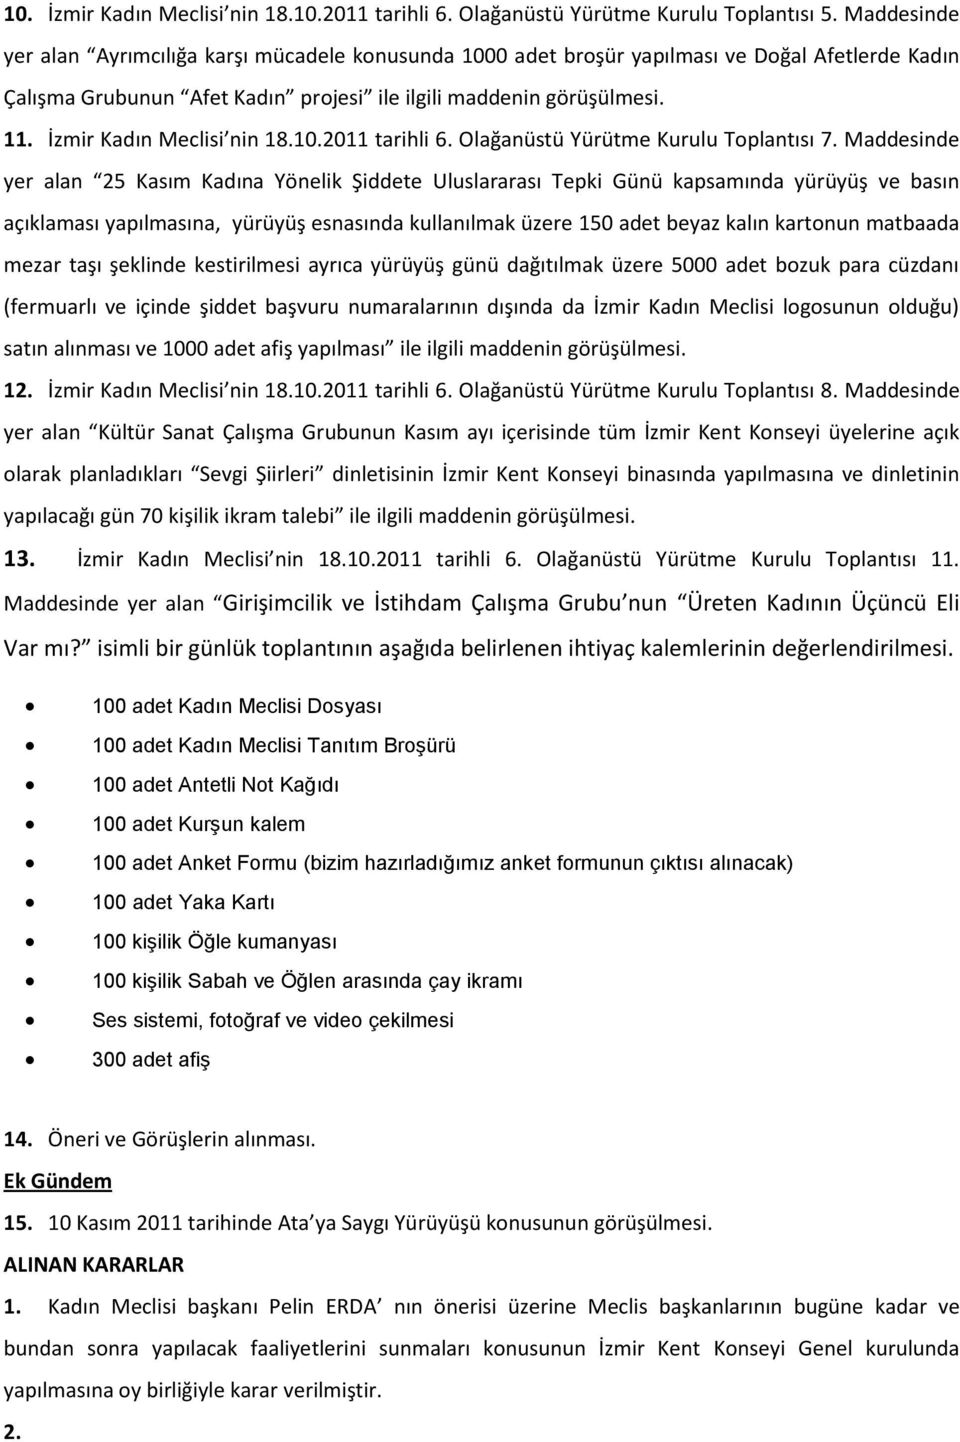 İzmir Kadın Meclisi nin 18.10.2011 tarihli 6. Olağanüstü Yürütme Kurulu Toplantısı 7.